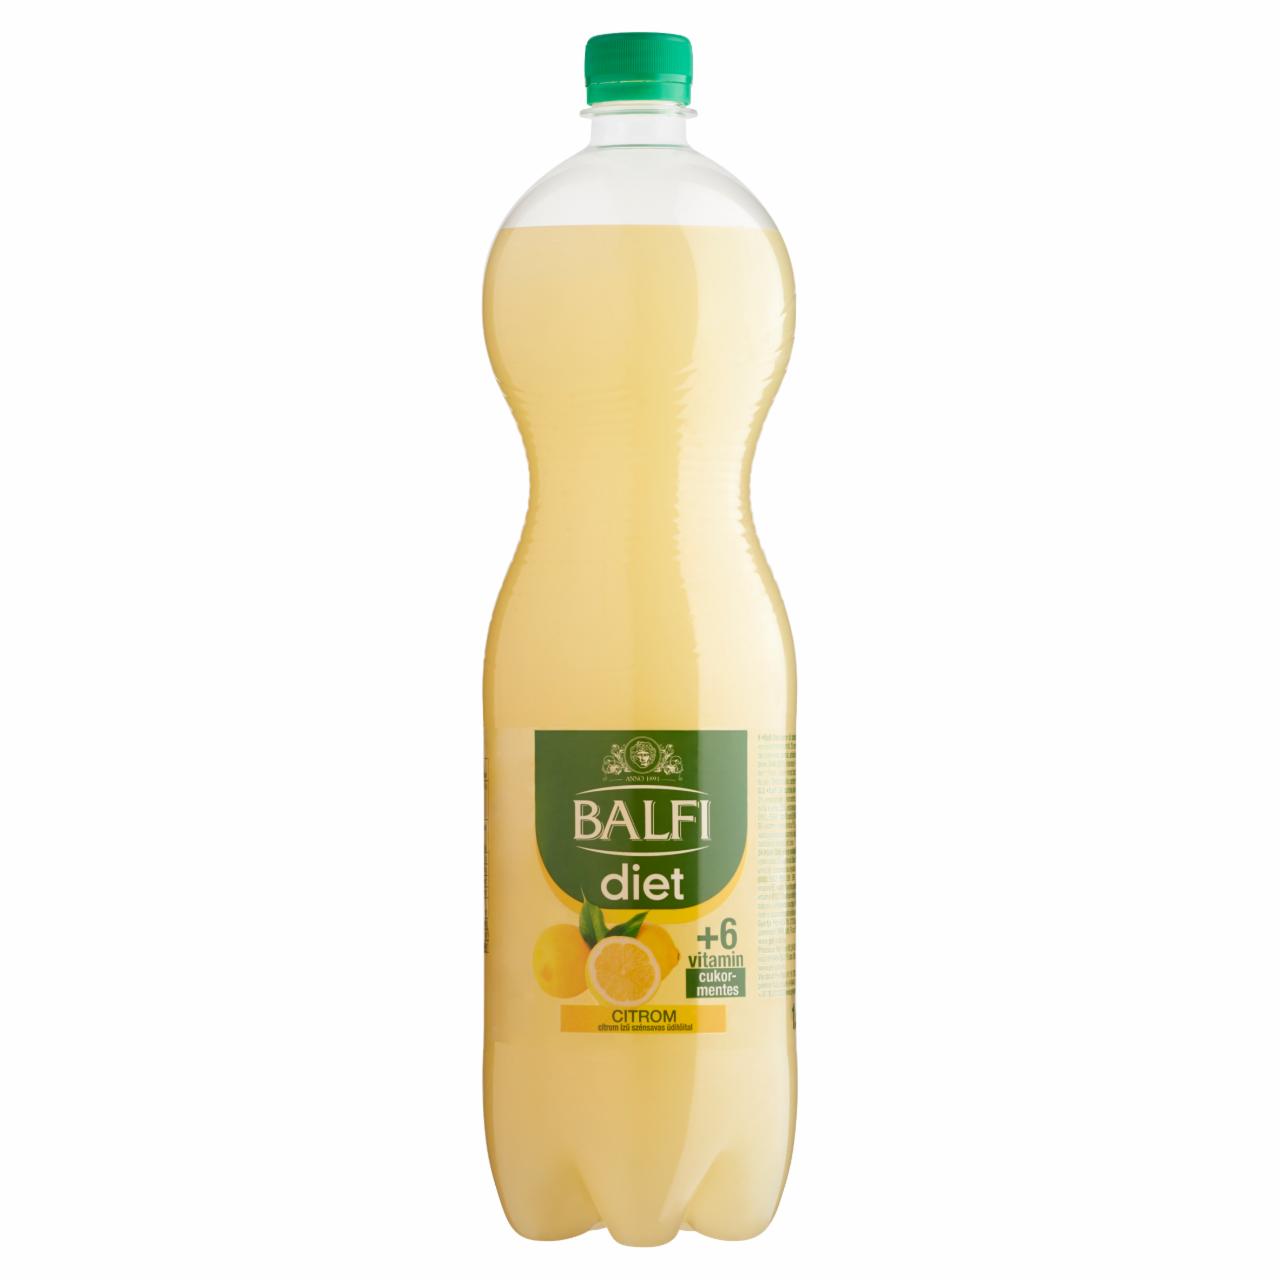 Képek - Balfi Diet citrom ízű szénsavas üdítőital 1,5 l